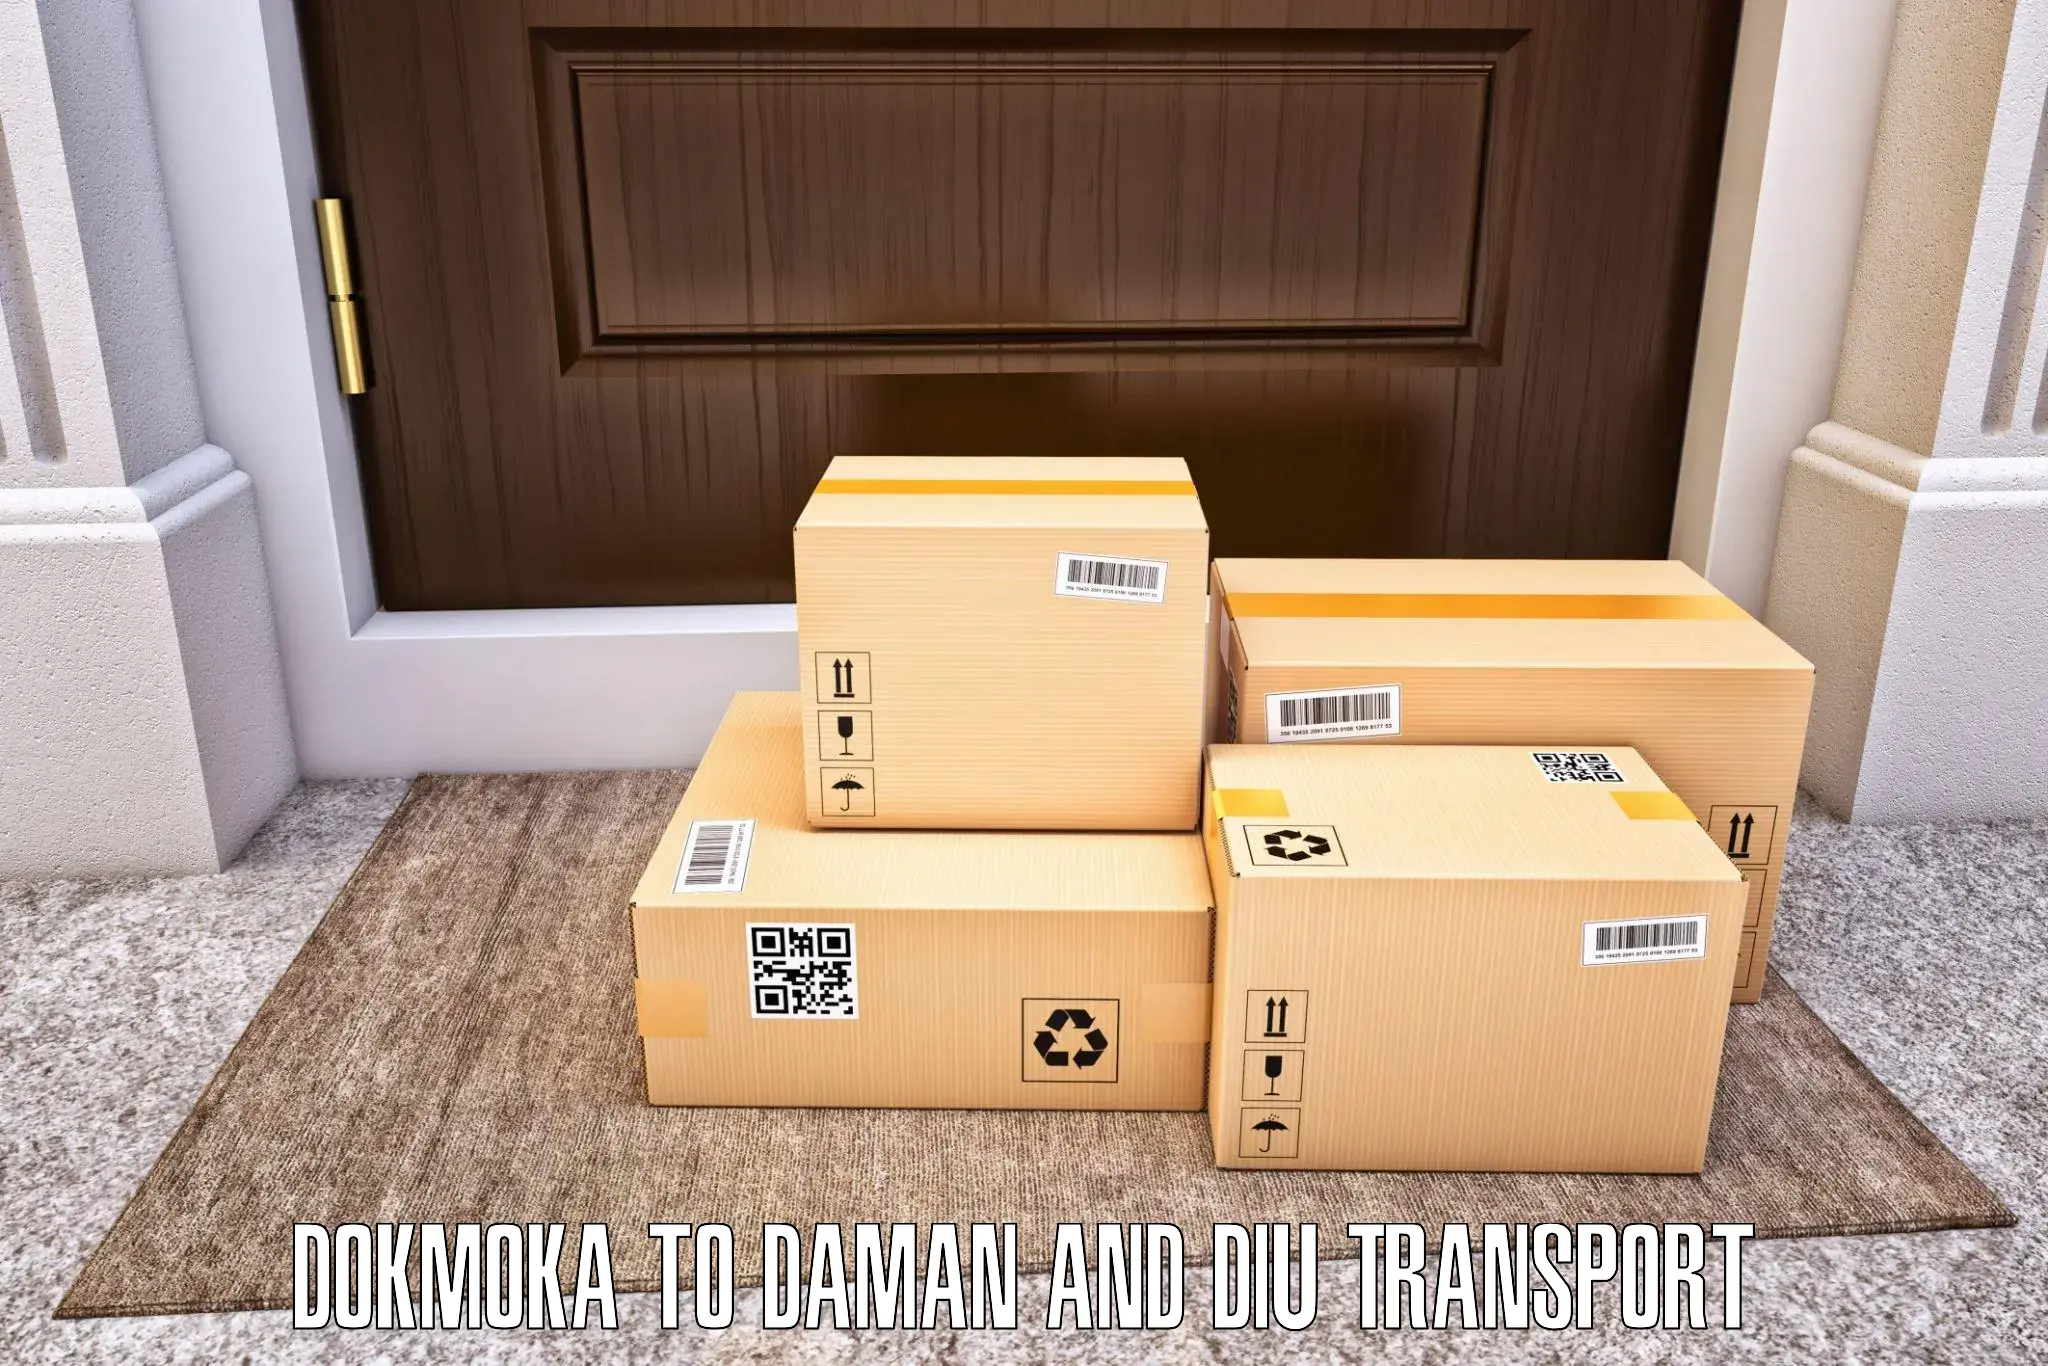 Transport shared services Dokmoka to Daman